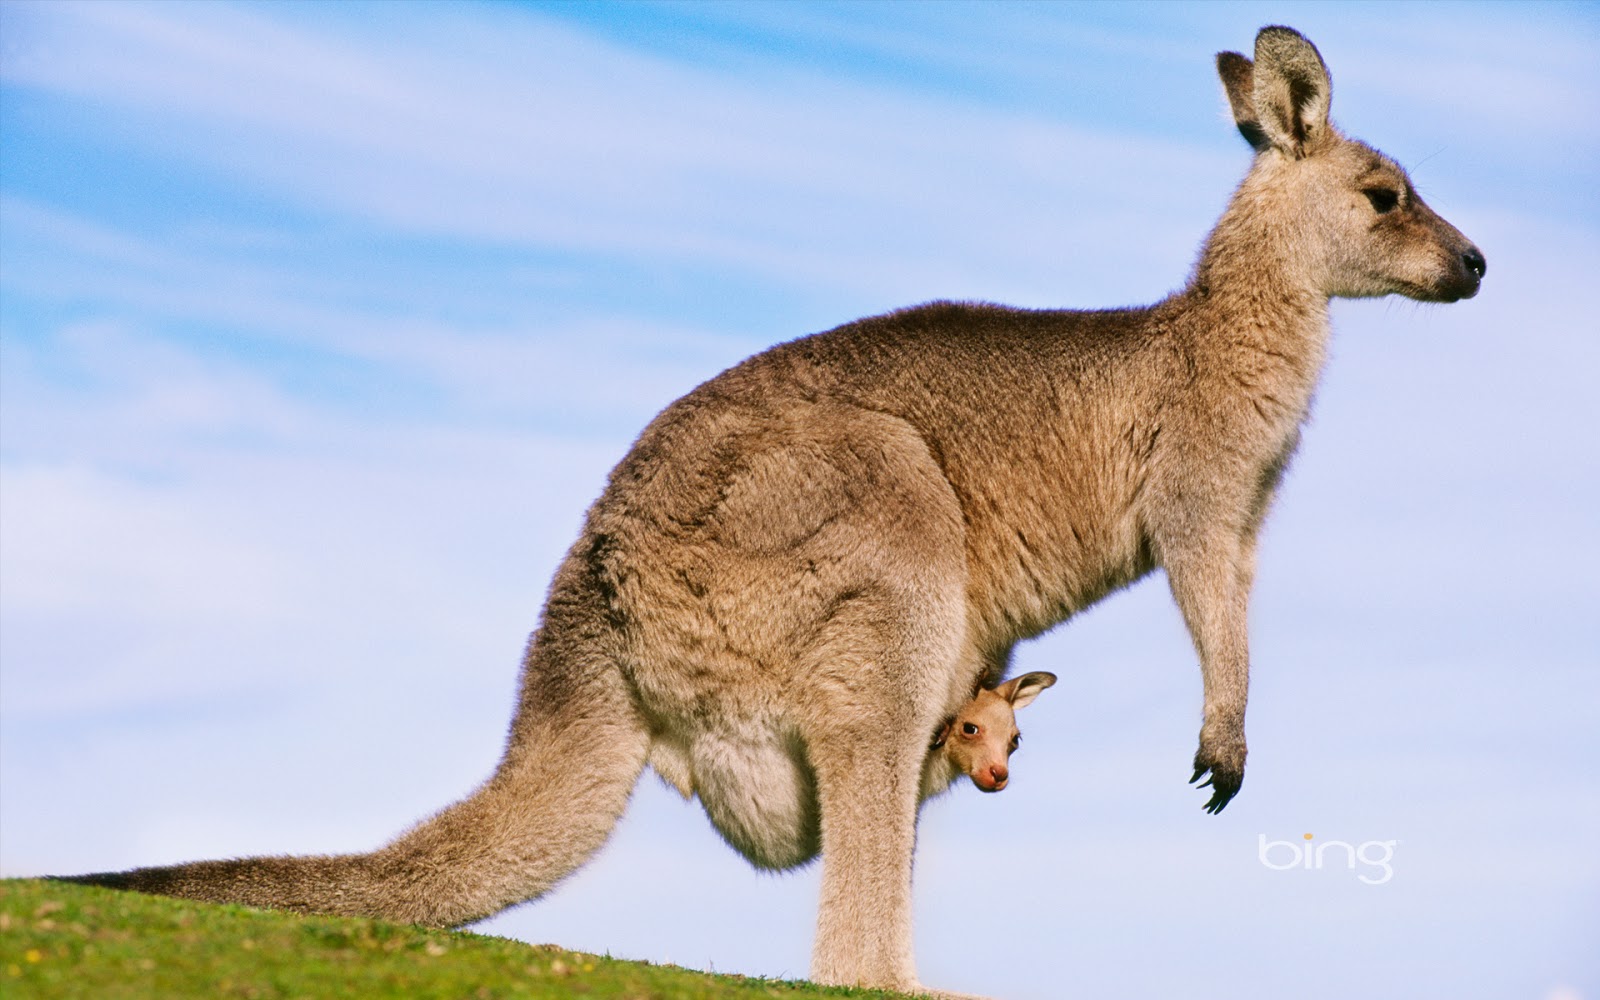 Seimo nariai nevažiuos gelbėti kengūrų?